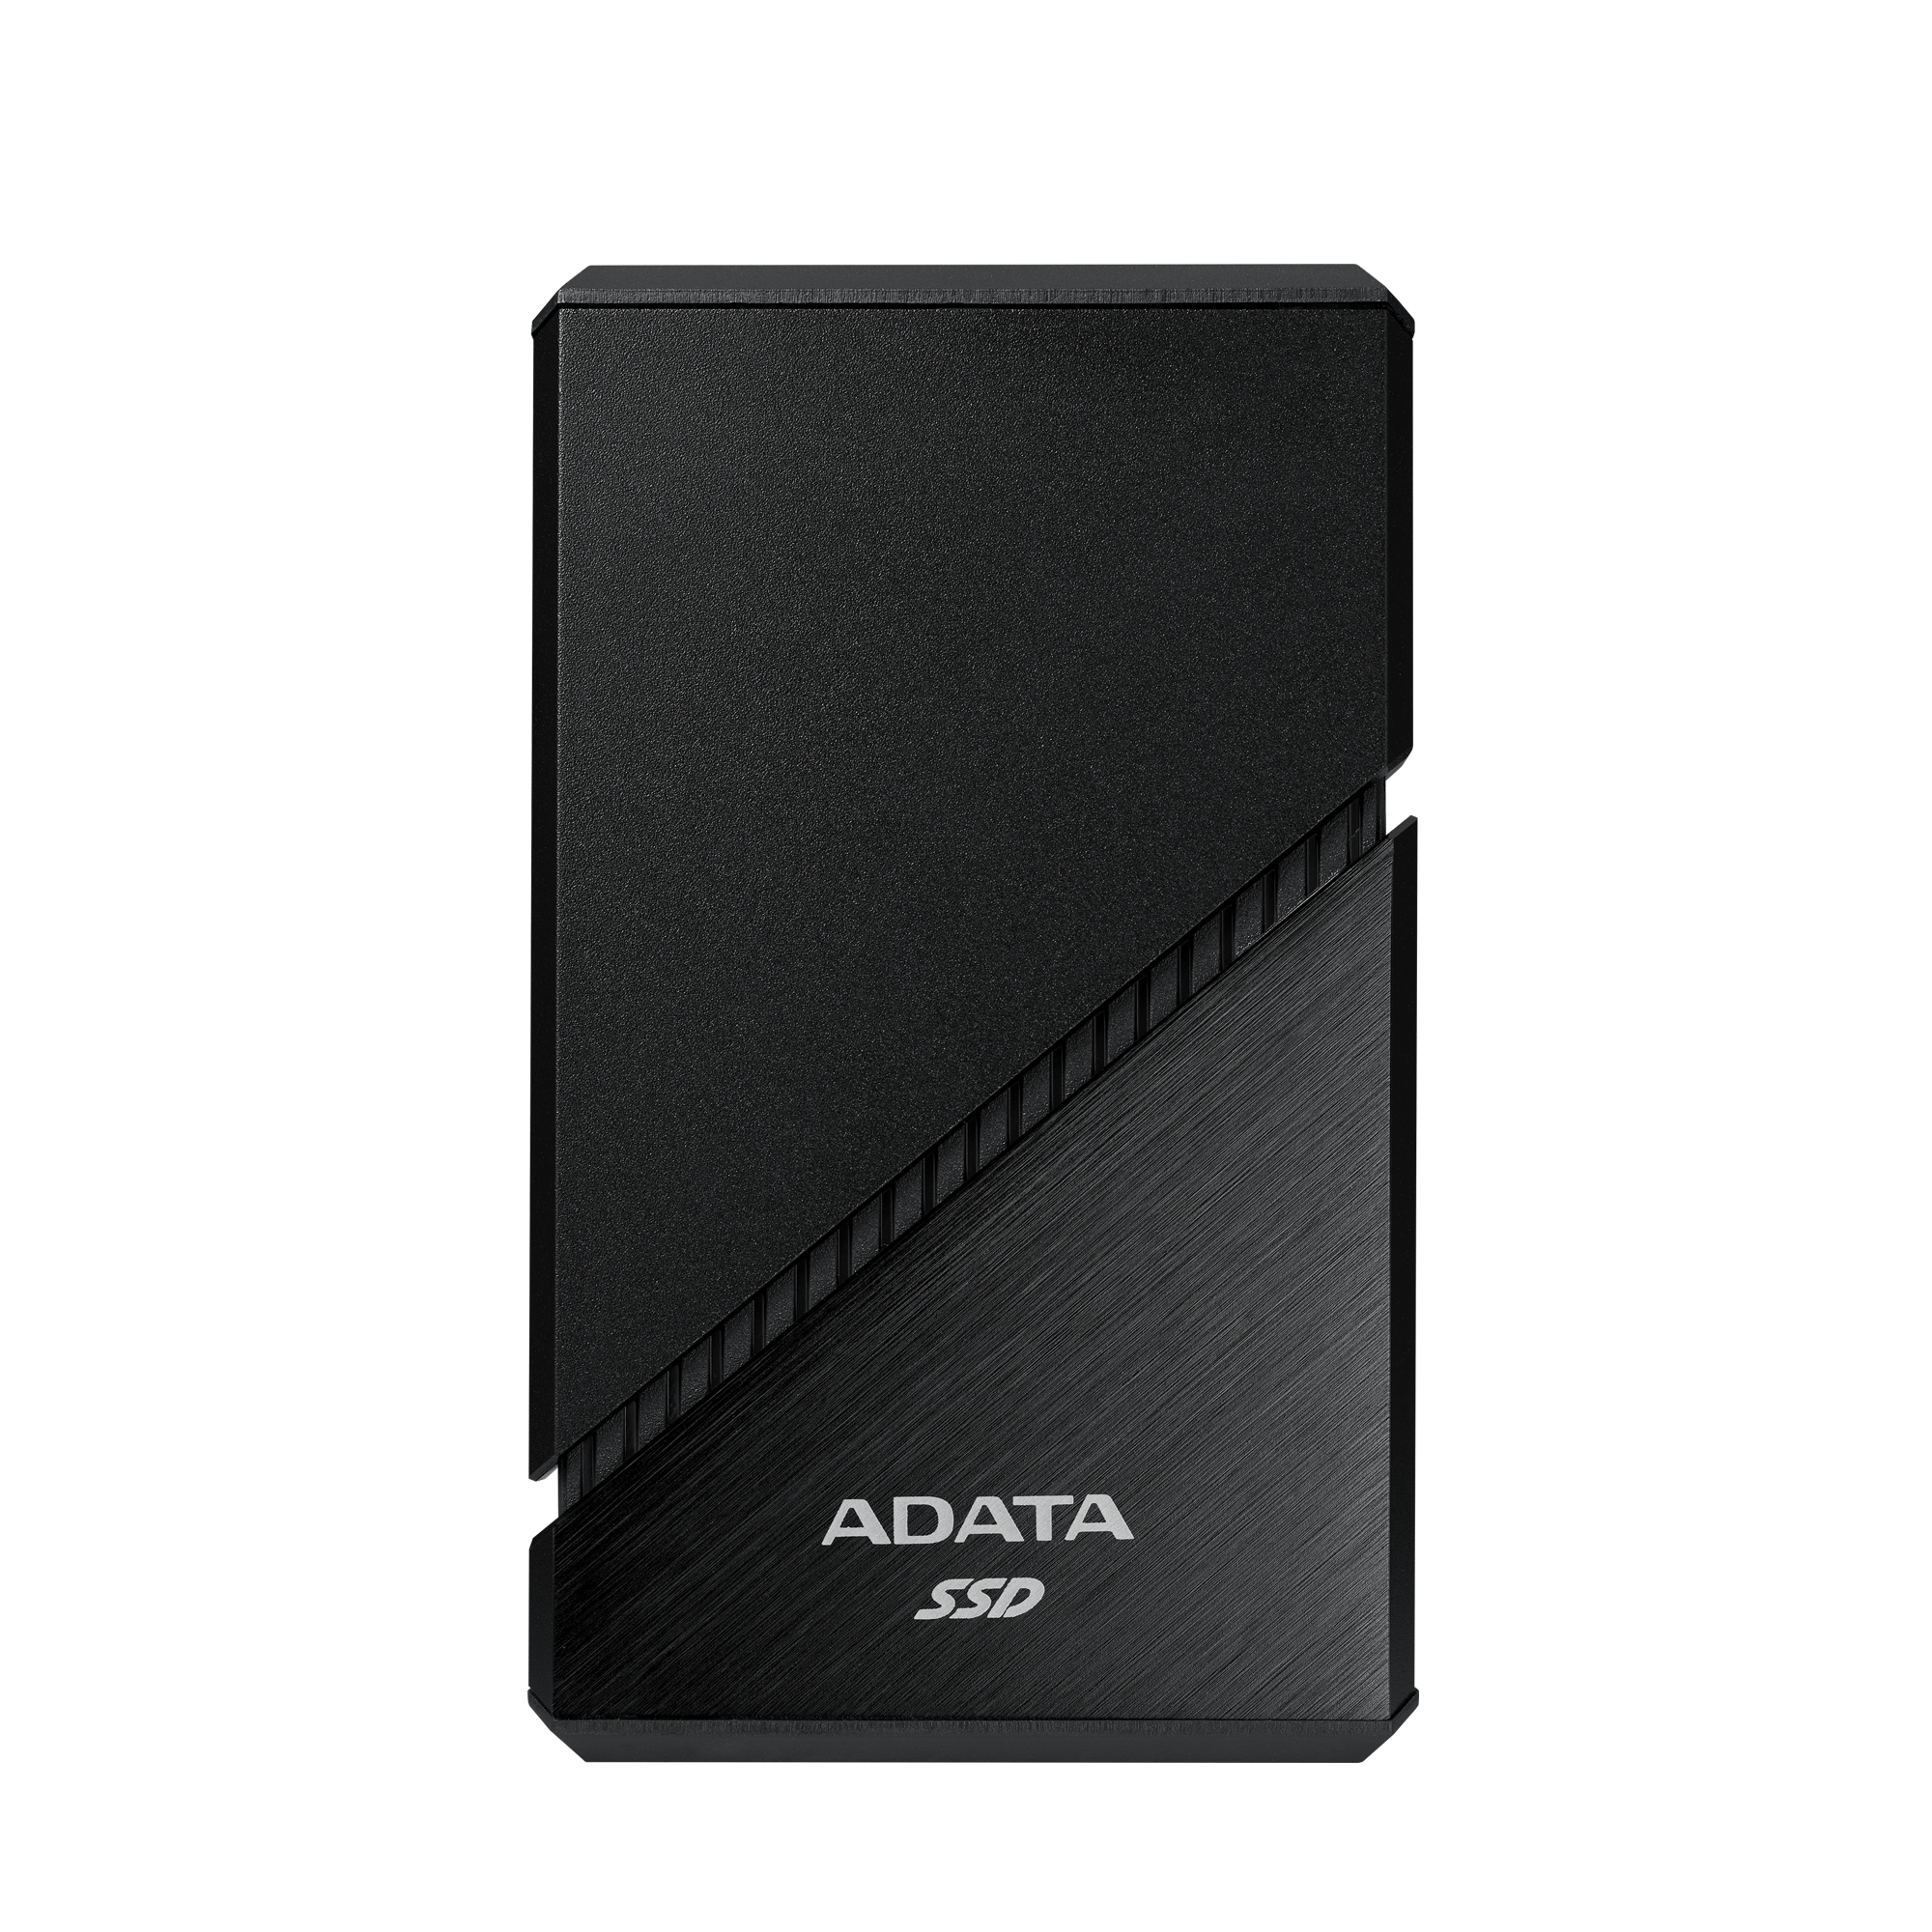 ADATA externý SSD SE920 1TB USB4 